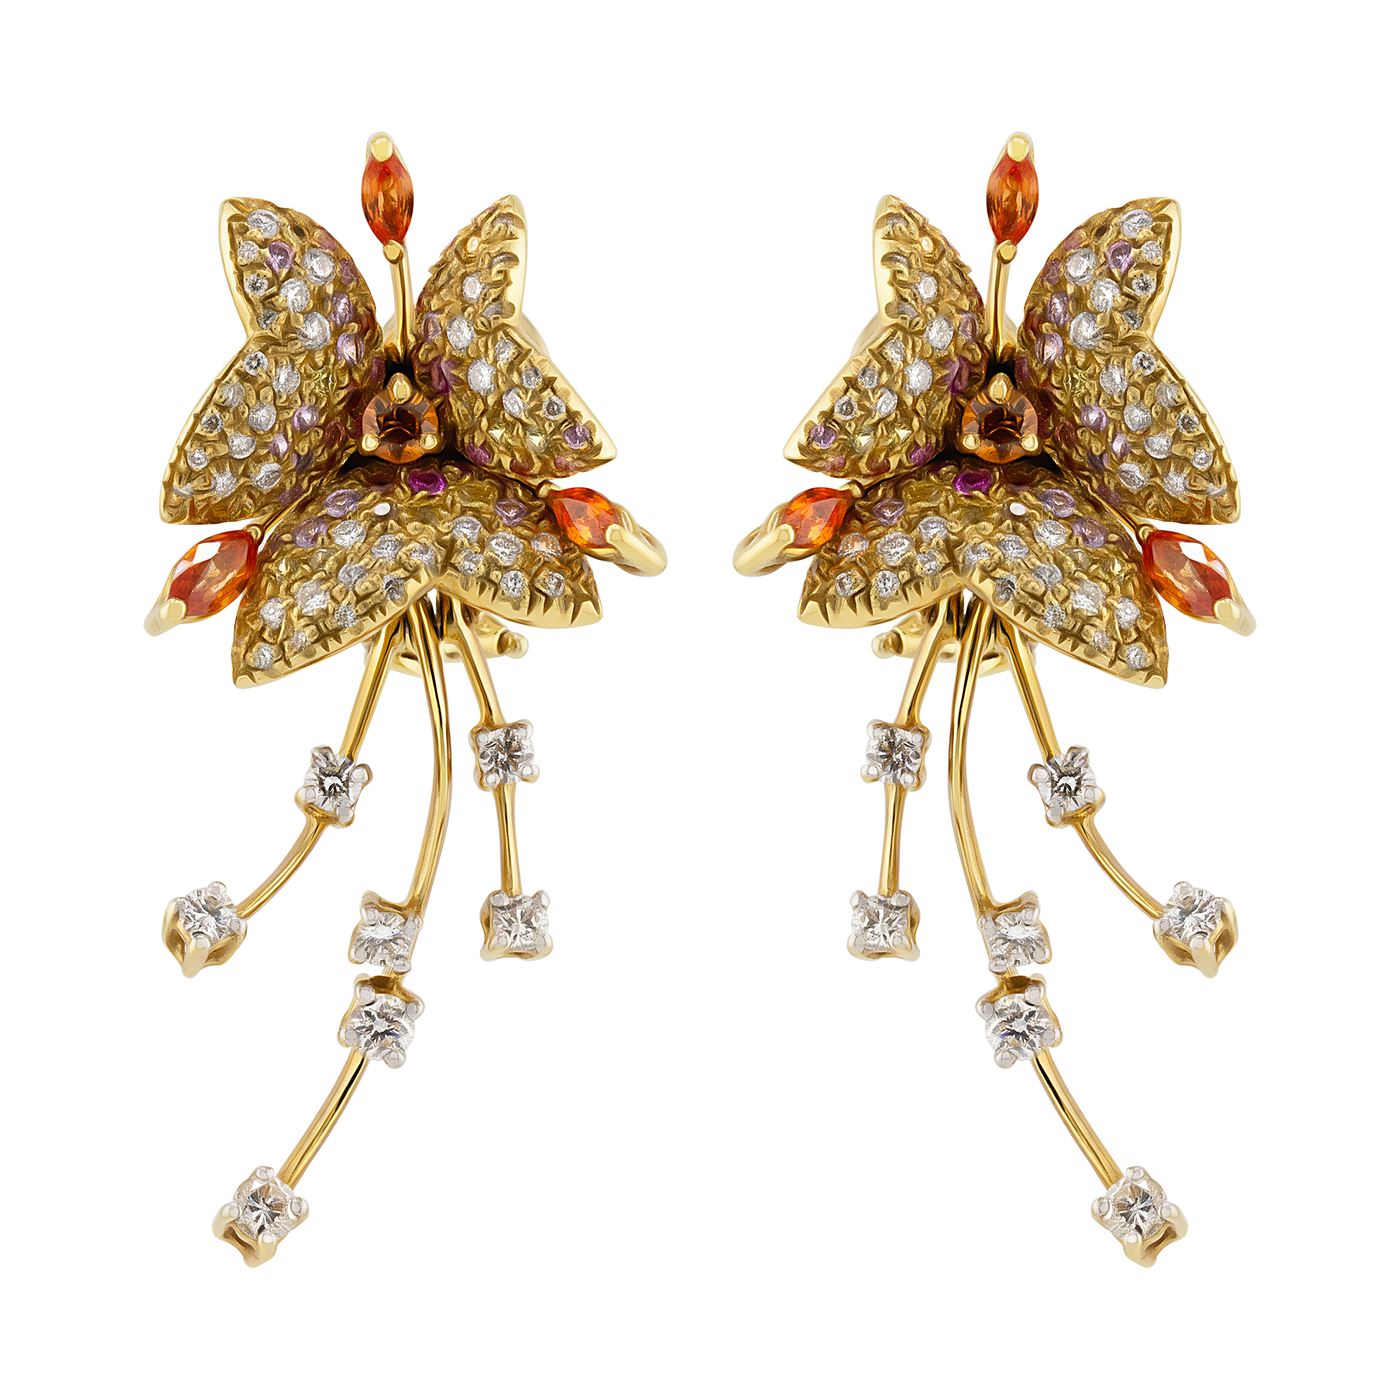 Stefan Hafner 18K Yellow Gold Diamond & Sapphire Earrings